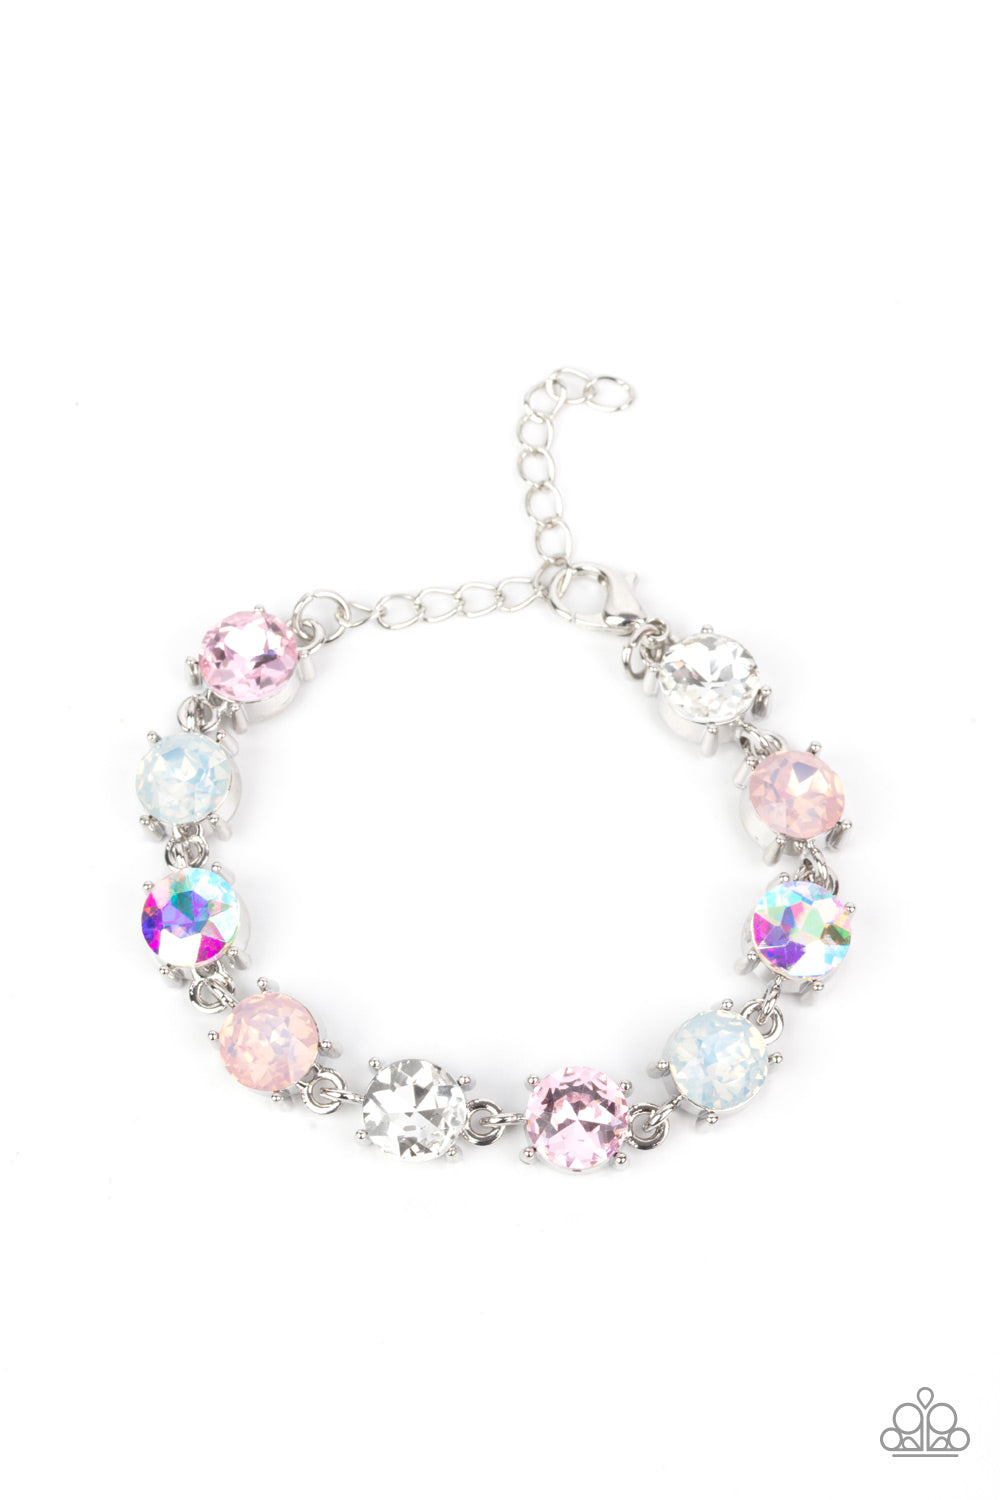 RESTOCKED Paparazzi Bracelets Celestial Couture - Pink  bracelet